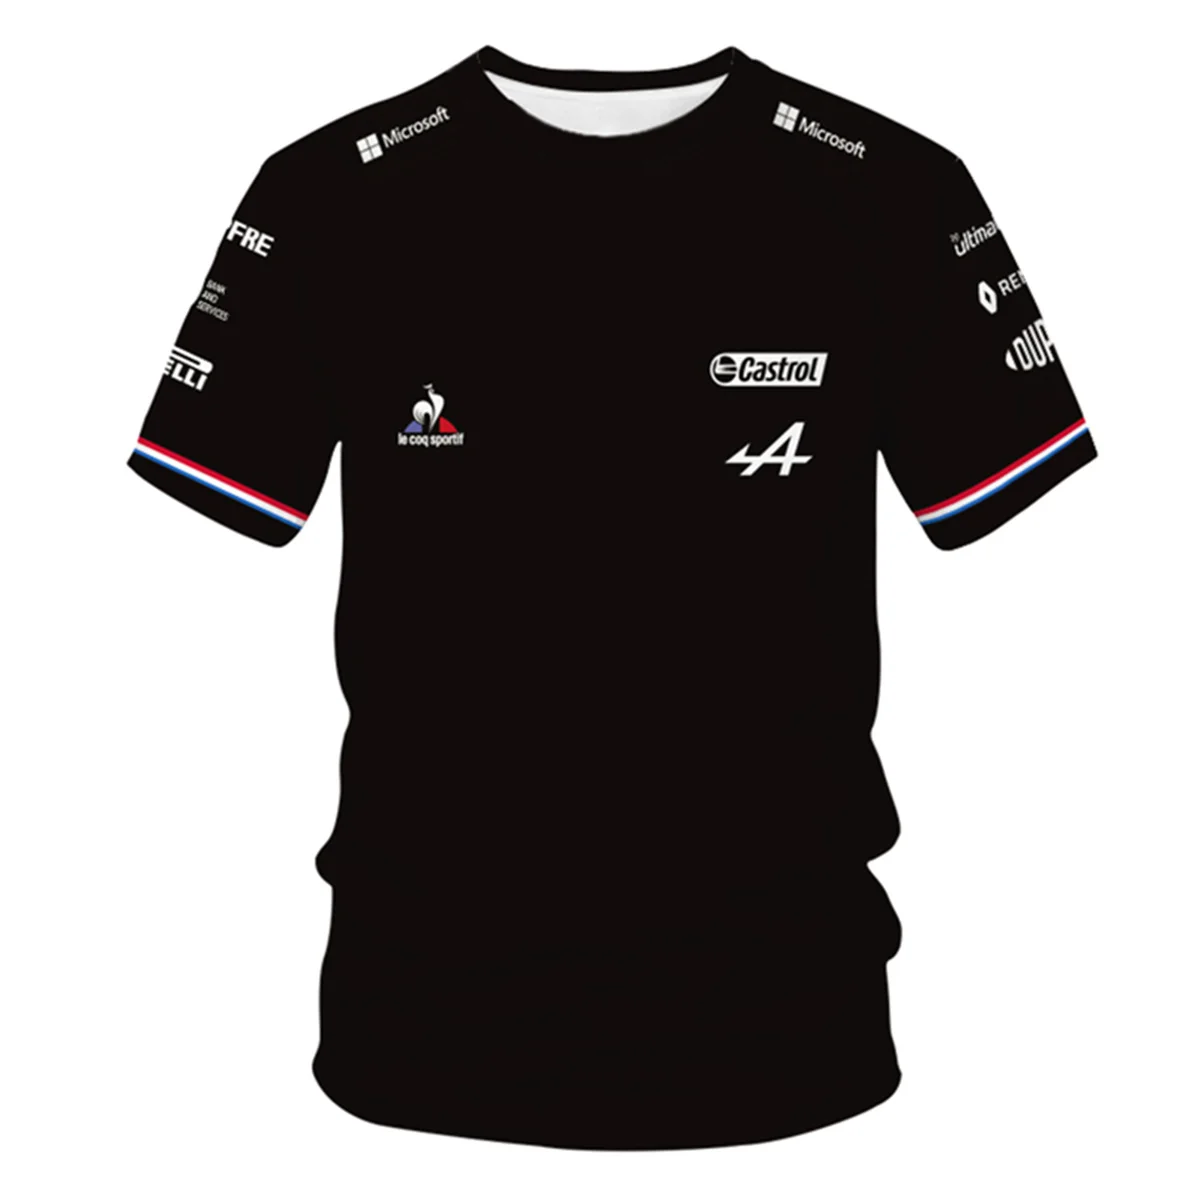 

Fãs do carro camiseta azul preto respirável camisa de manga curta roupas nova 2021 espanha alpine f1 equipe motorsport alonso co